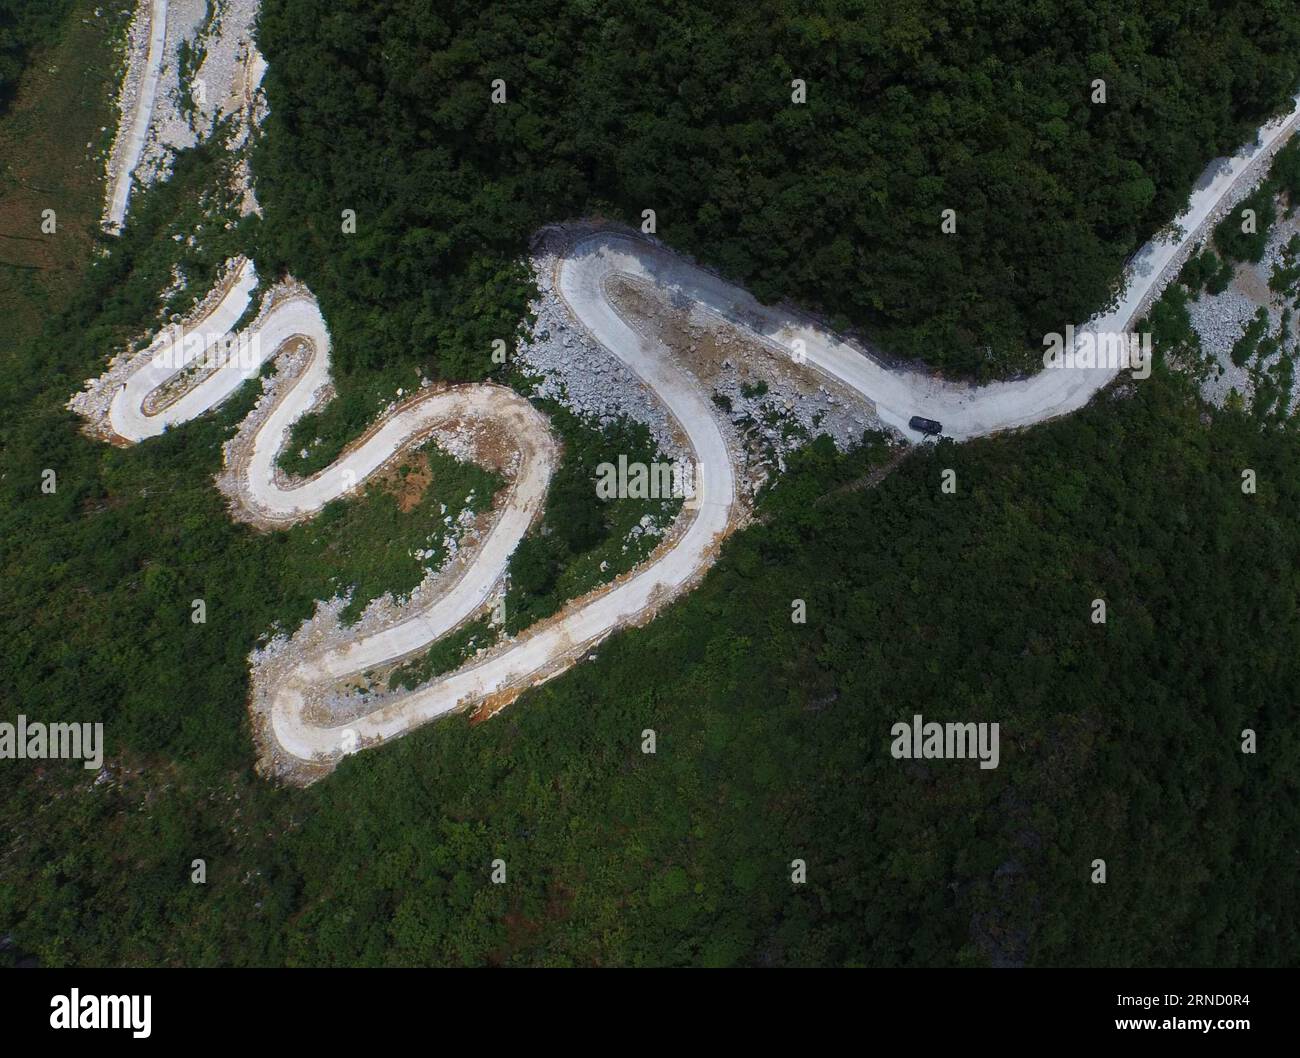 (160427) -- DAHUA, 27. April 2016 -- ein Luftbild, das am 13. Juli 2015 aufgenommen wurde, zeigt eine gewundene Straße in der Nähe des Nongliang-Dorfes der Qibainong-Gemeinde des autonomen Komitats Dahua Yao, des autonomen Komitats Guangxi Zhuang in Südchina. Die Städte Qibainong und Bansheng, die Hunderte von Vertiefungen mit einer durchschnittlichen Tiefe von 105 Metern haben, befinden sich zwischen Bergen mit einer Höhe von 800-1000 Metern. Die Pro-Kopf-Anbauflächen liegen jedoch unter 0,25 mu (0,017 Hektar) in diesem felsigen Gebiet, und die Bewohner müssen hier durch Niederschläge Zugang zu trinkbarem Wasser haben. Seit den 1990er Jahren hat die Kommunalregierung eine eingeführt Stockfoto